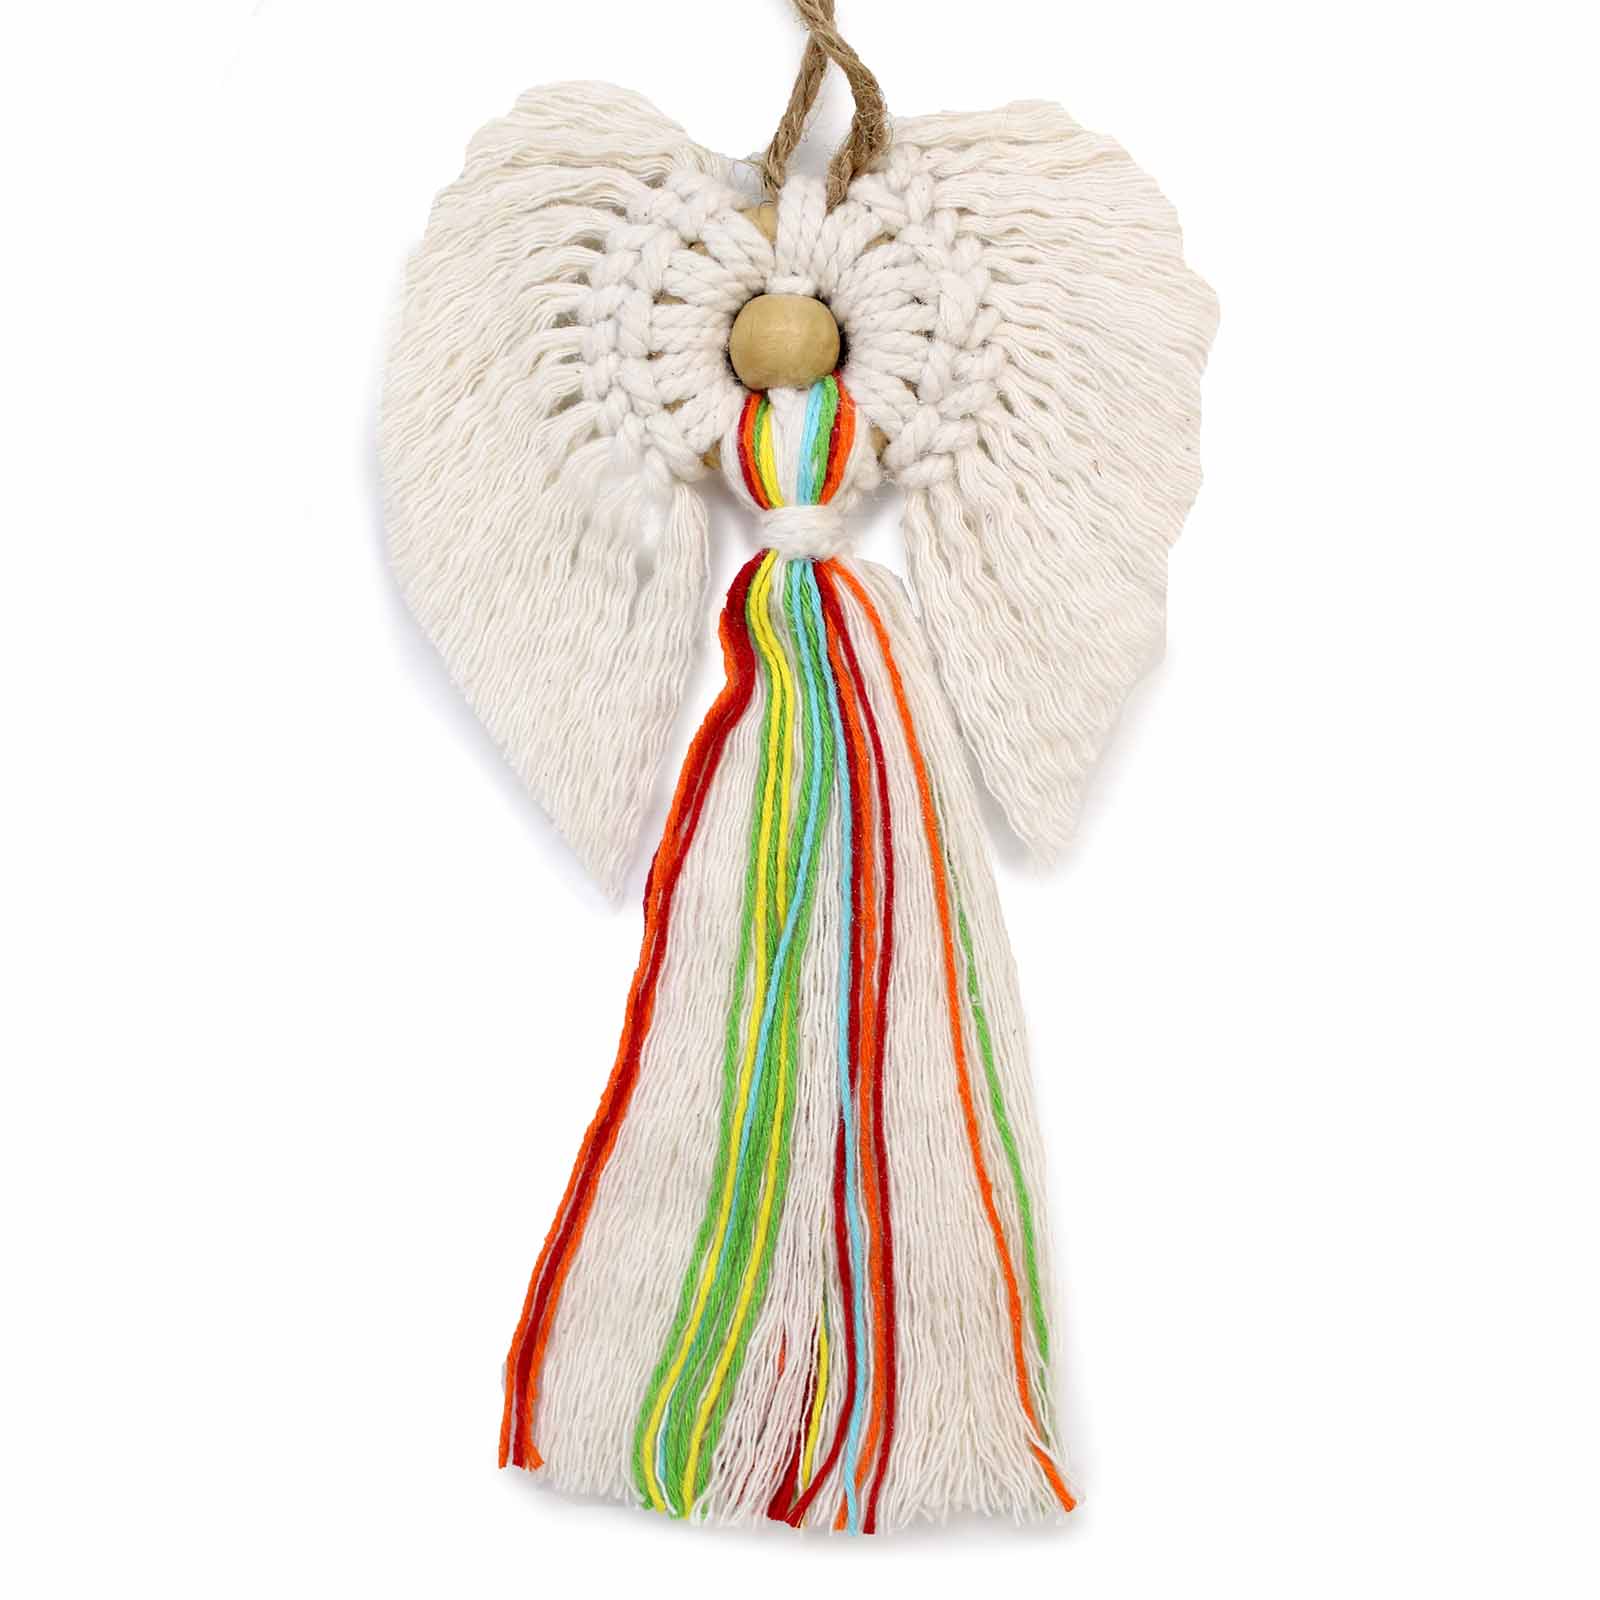 Hand Carved Hati Hati Angel LOVE Figurine  Wood Ornament Figure In Gift Bag 